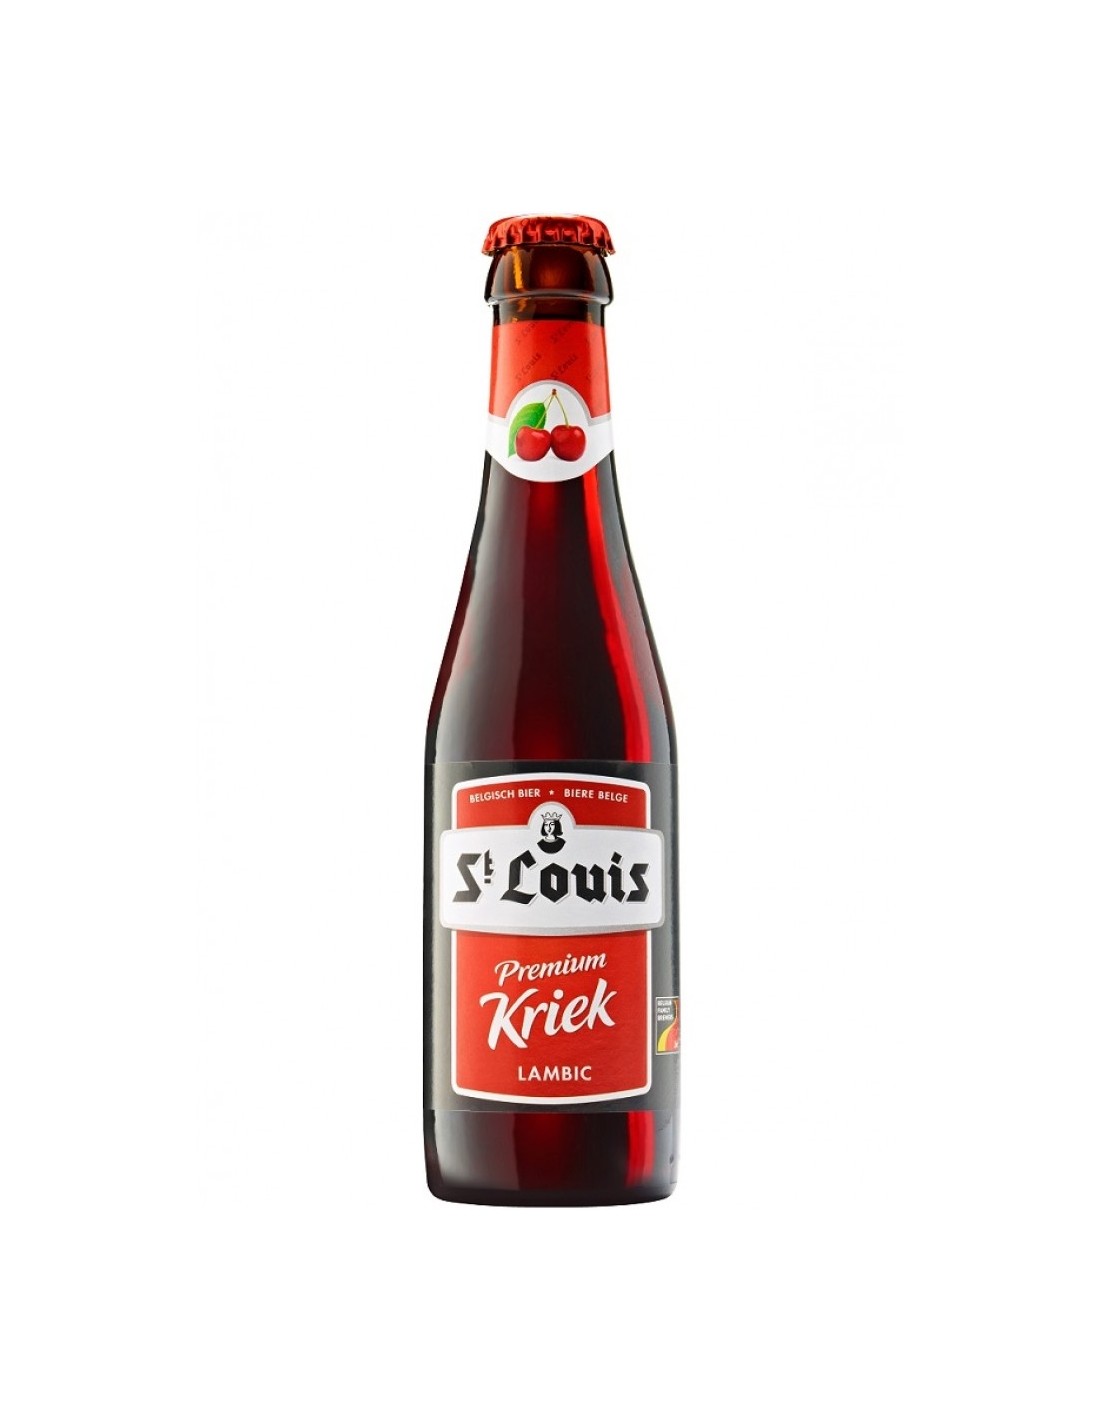 Bere rosie, filtrata St.Louis Premium Kriek, 3.2% alc., 0.25L, Belgia image4